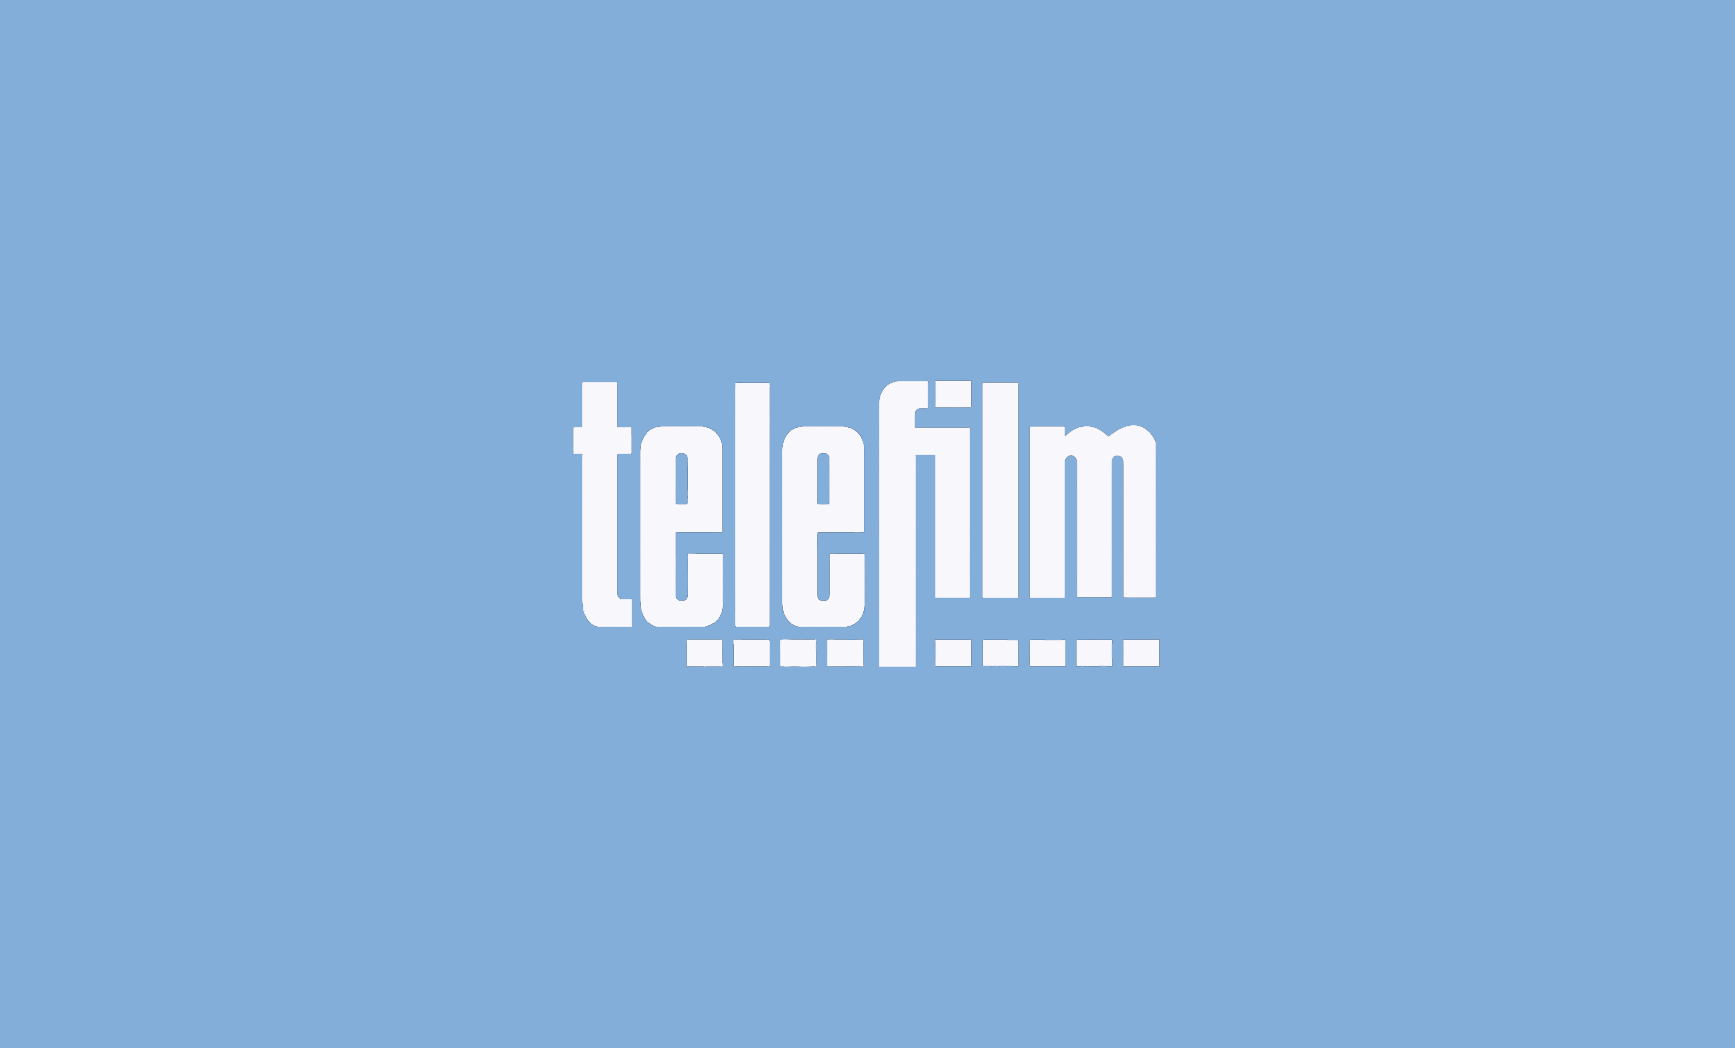 Uitslag Telefilm ronde 2023 (uitzending 2025)